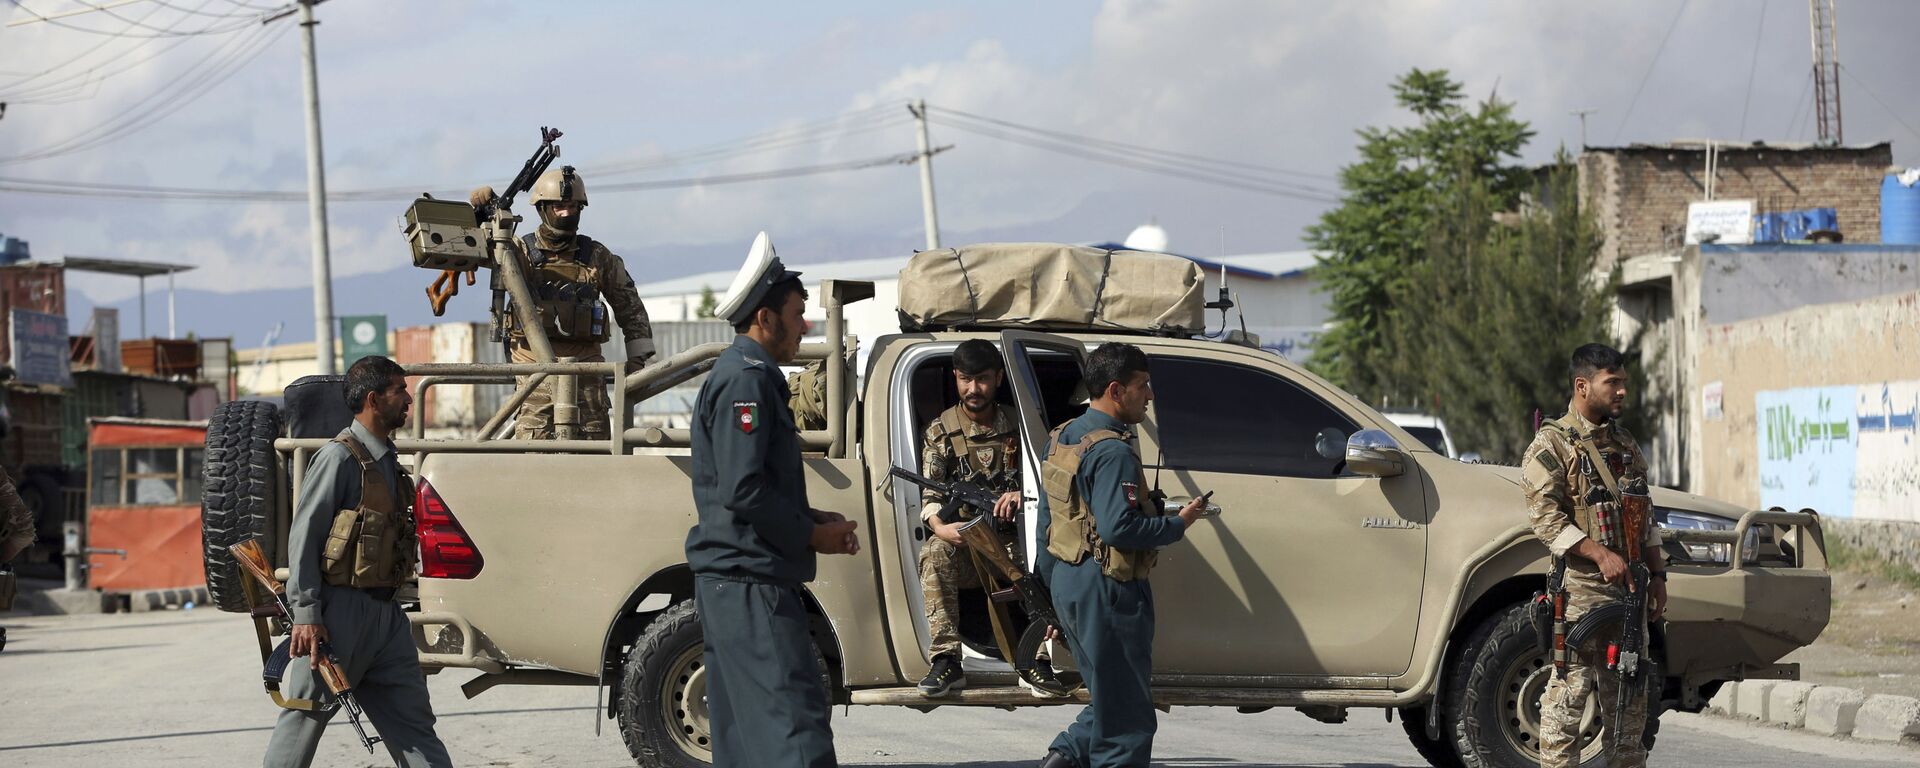 Афганские силовики прибыли на место где произошел взрыв в мечети 24 мая 2019 - Sputnik Тоҷикистон, 1920, 13.11.2019